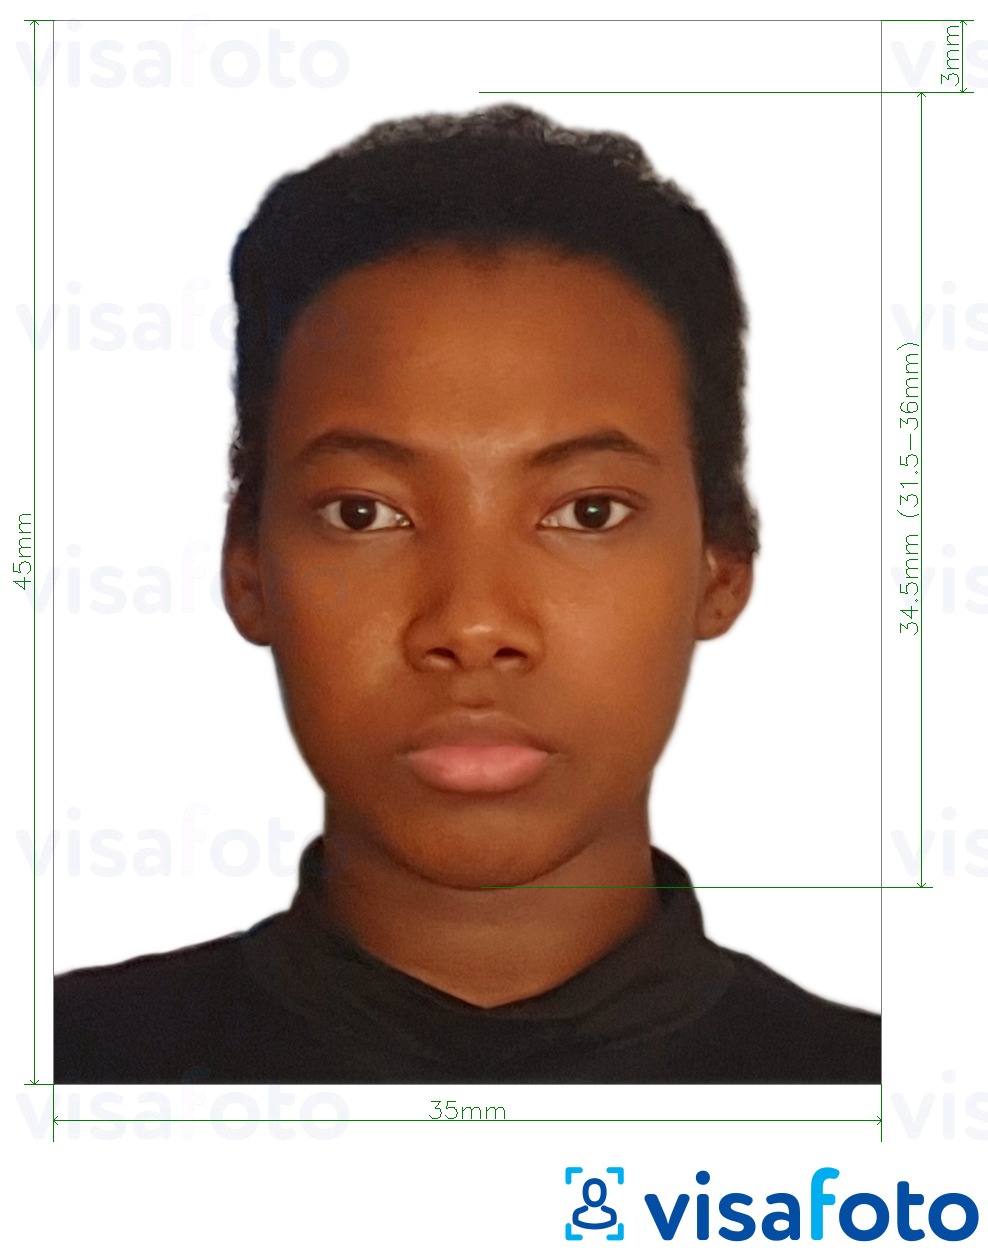 Ejemplo de foto para Pasaporte de Guyana 45x35 mm (1,77 x 1,38 pulgada) con la especificación del tamaño exacto